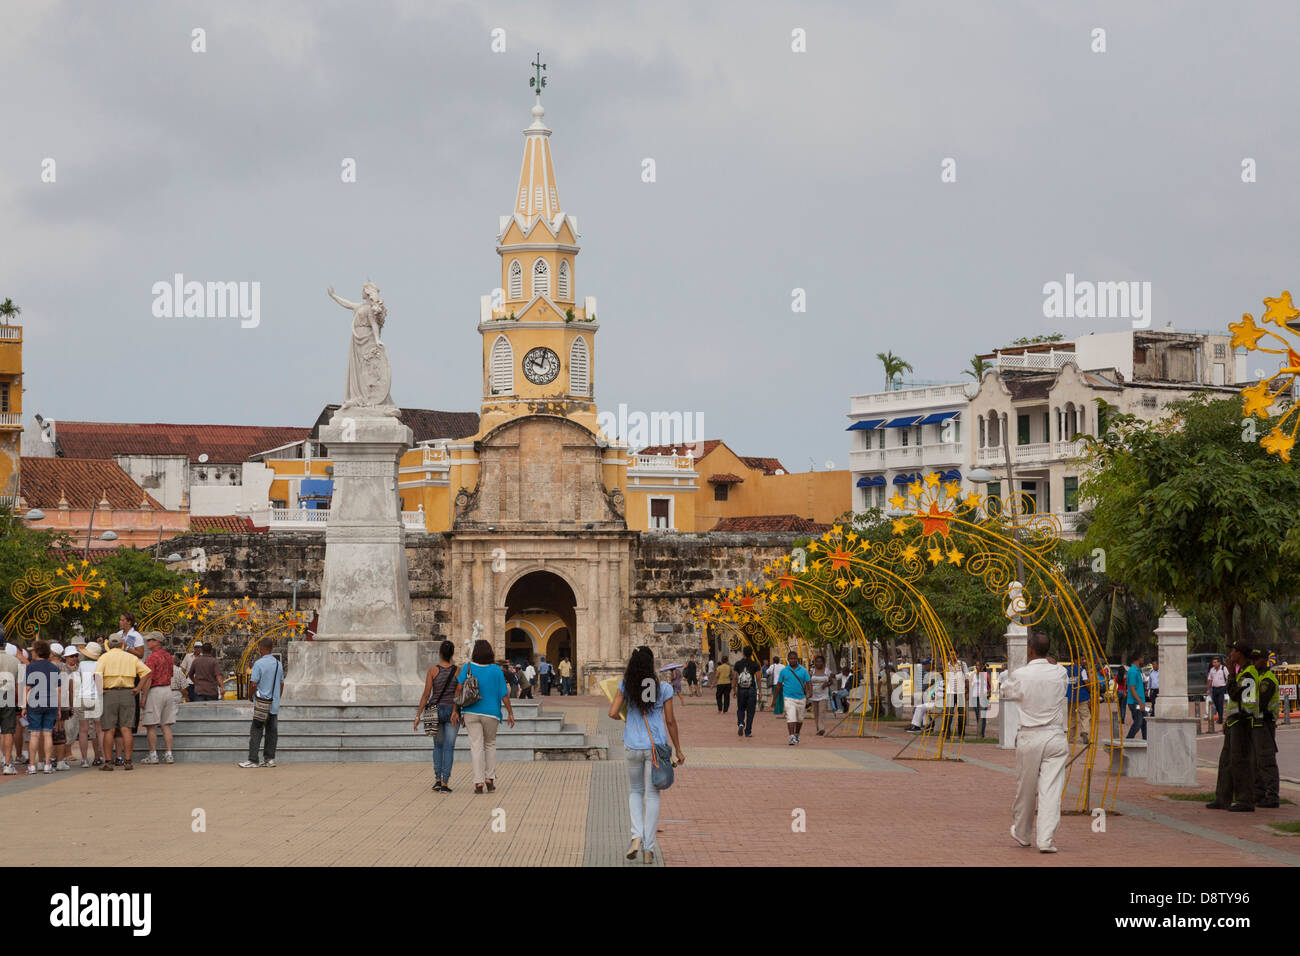 Paseo de los Martires, Torre del Reloj, Clock Tower, Cartagena, Colombia Stock Photo